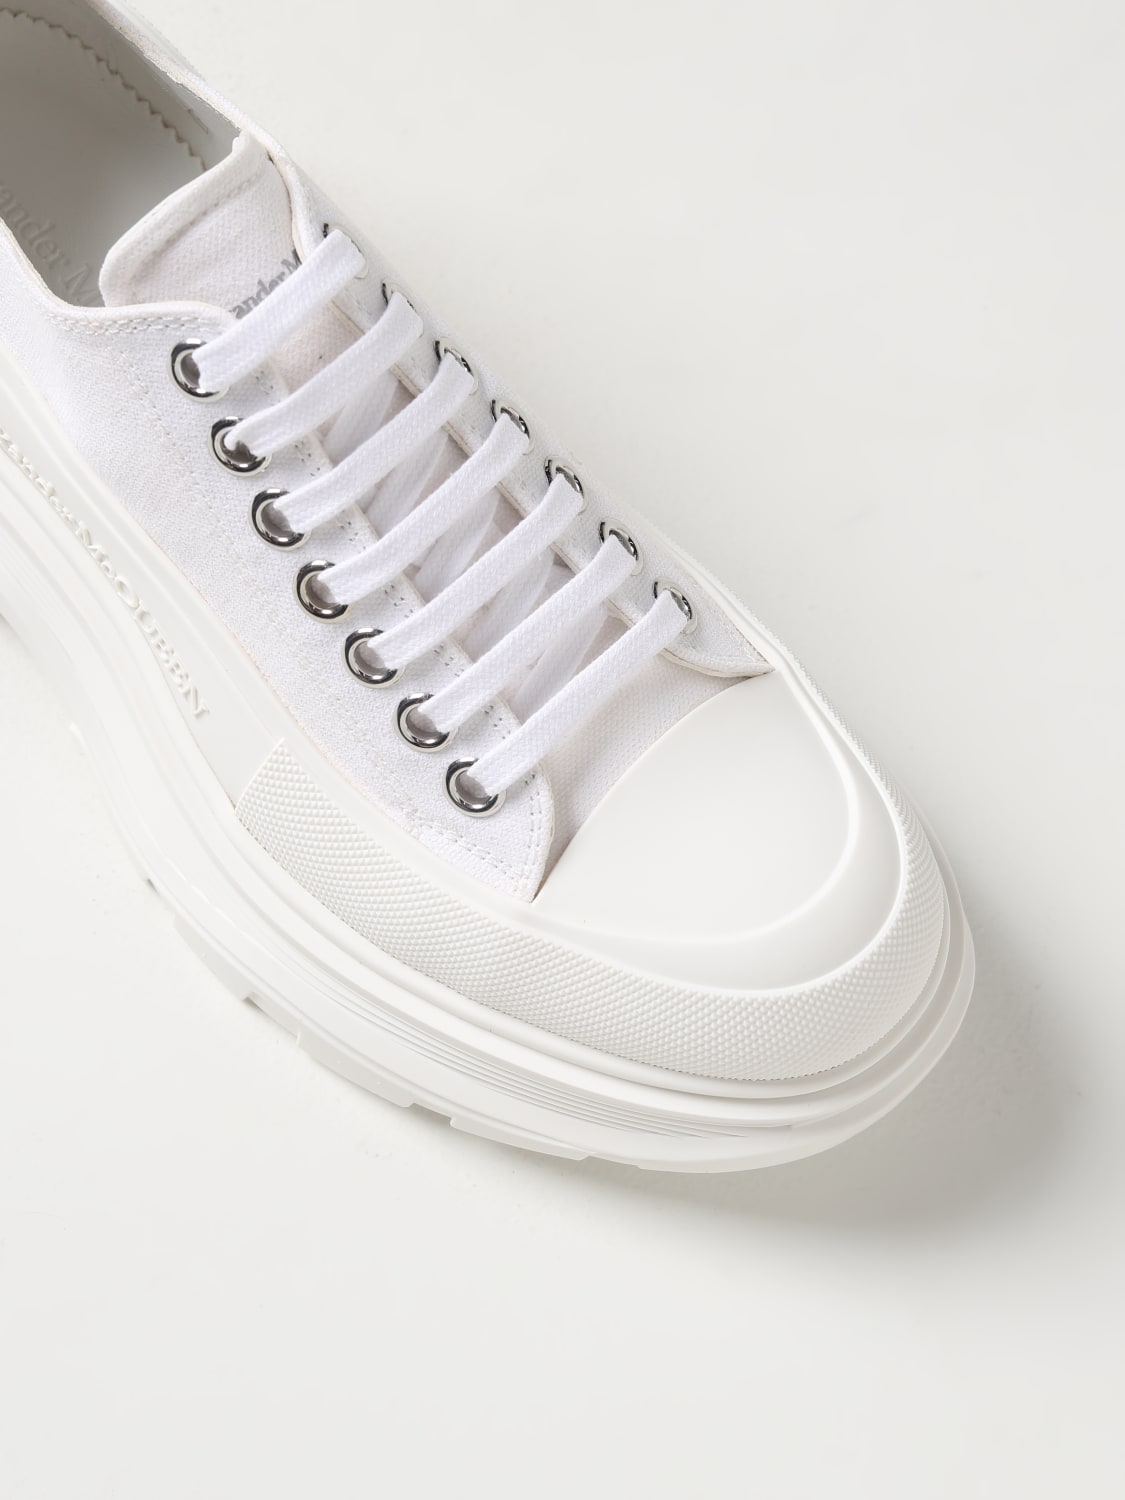 Alexander McQueen Sneakers with logo, IetpShops, Alexander McQueen Mens  Tread Slick Canvas Low Top Sneakers in White